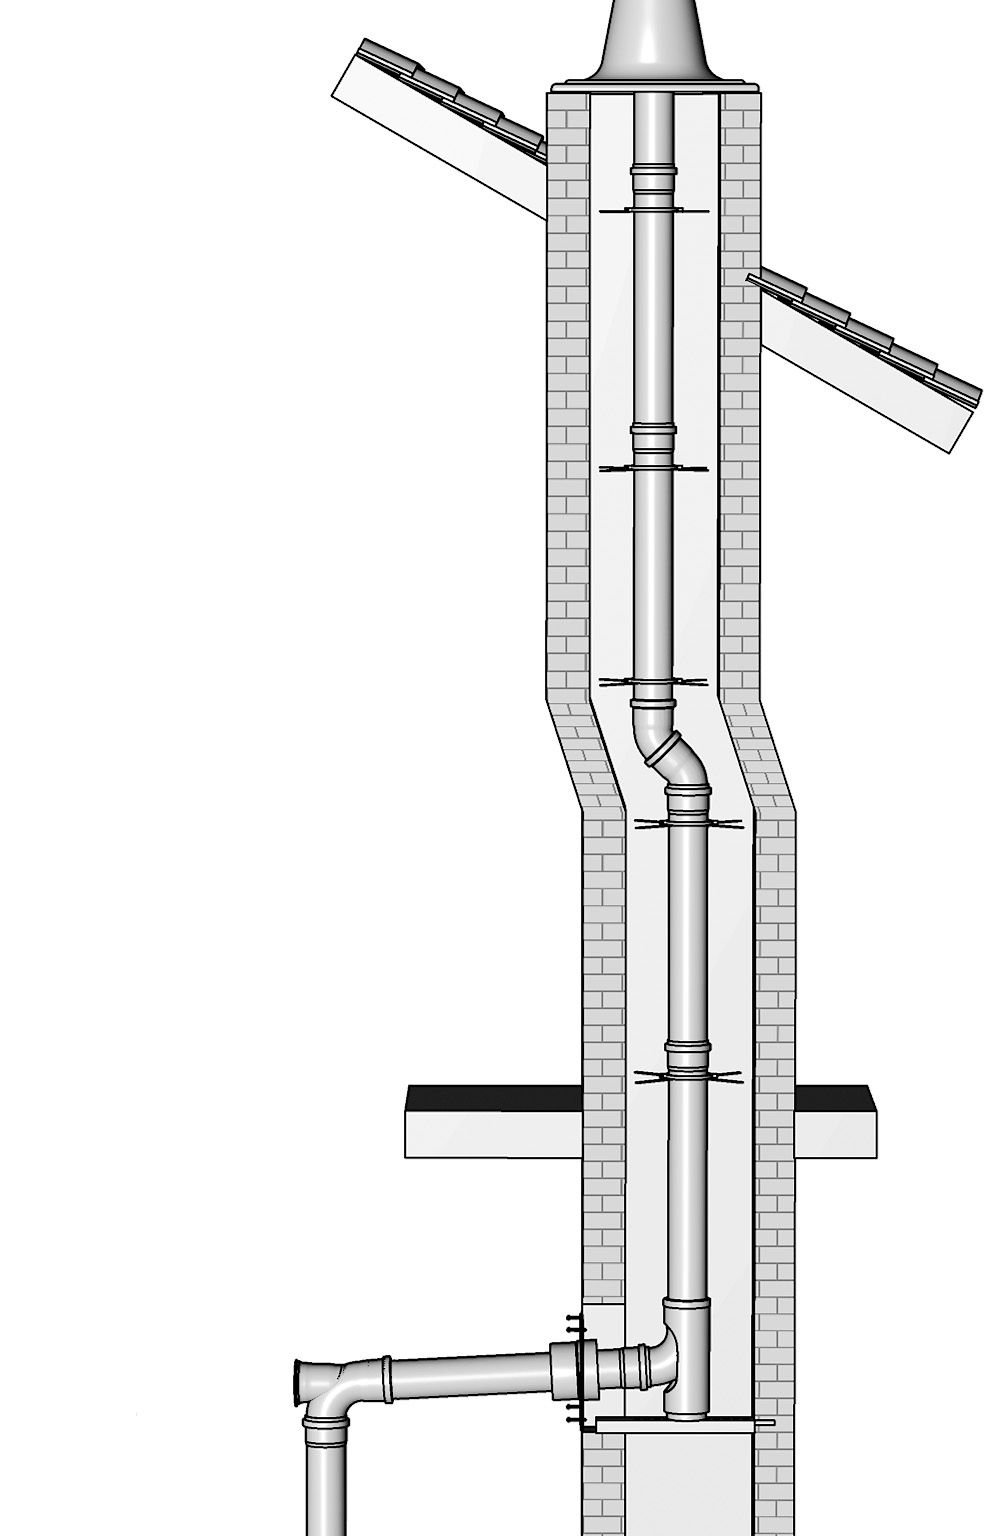 Návod na montáž a inštaláciu spalinového systému SERIO 1 2 0,3 m Horný kontrolný otvor je nutné do spalinového systém SERIO nainštalovať pokiaľ: je zvislý úsek systému dlhší ako 20 m s tým, že horný